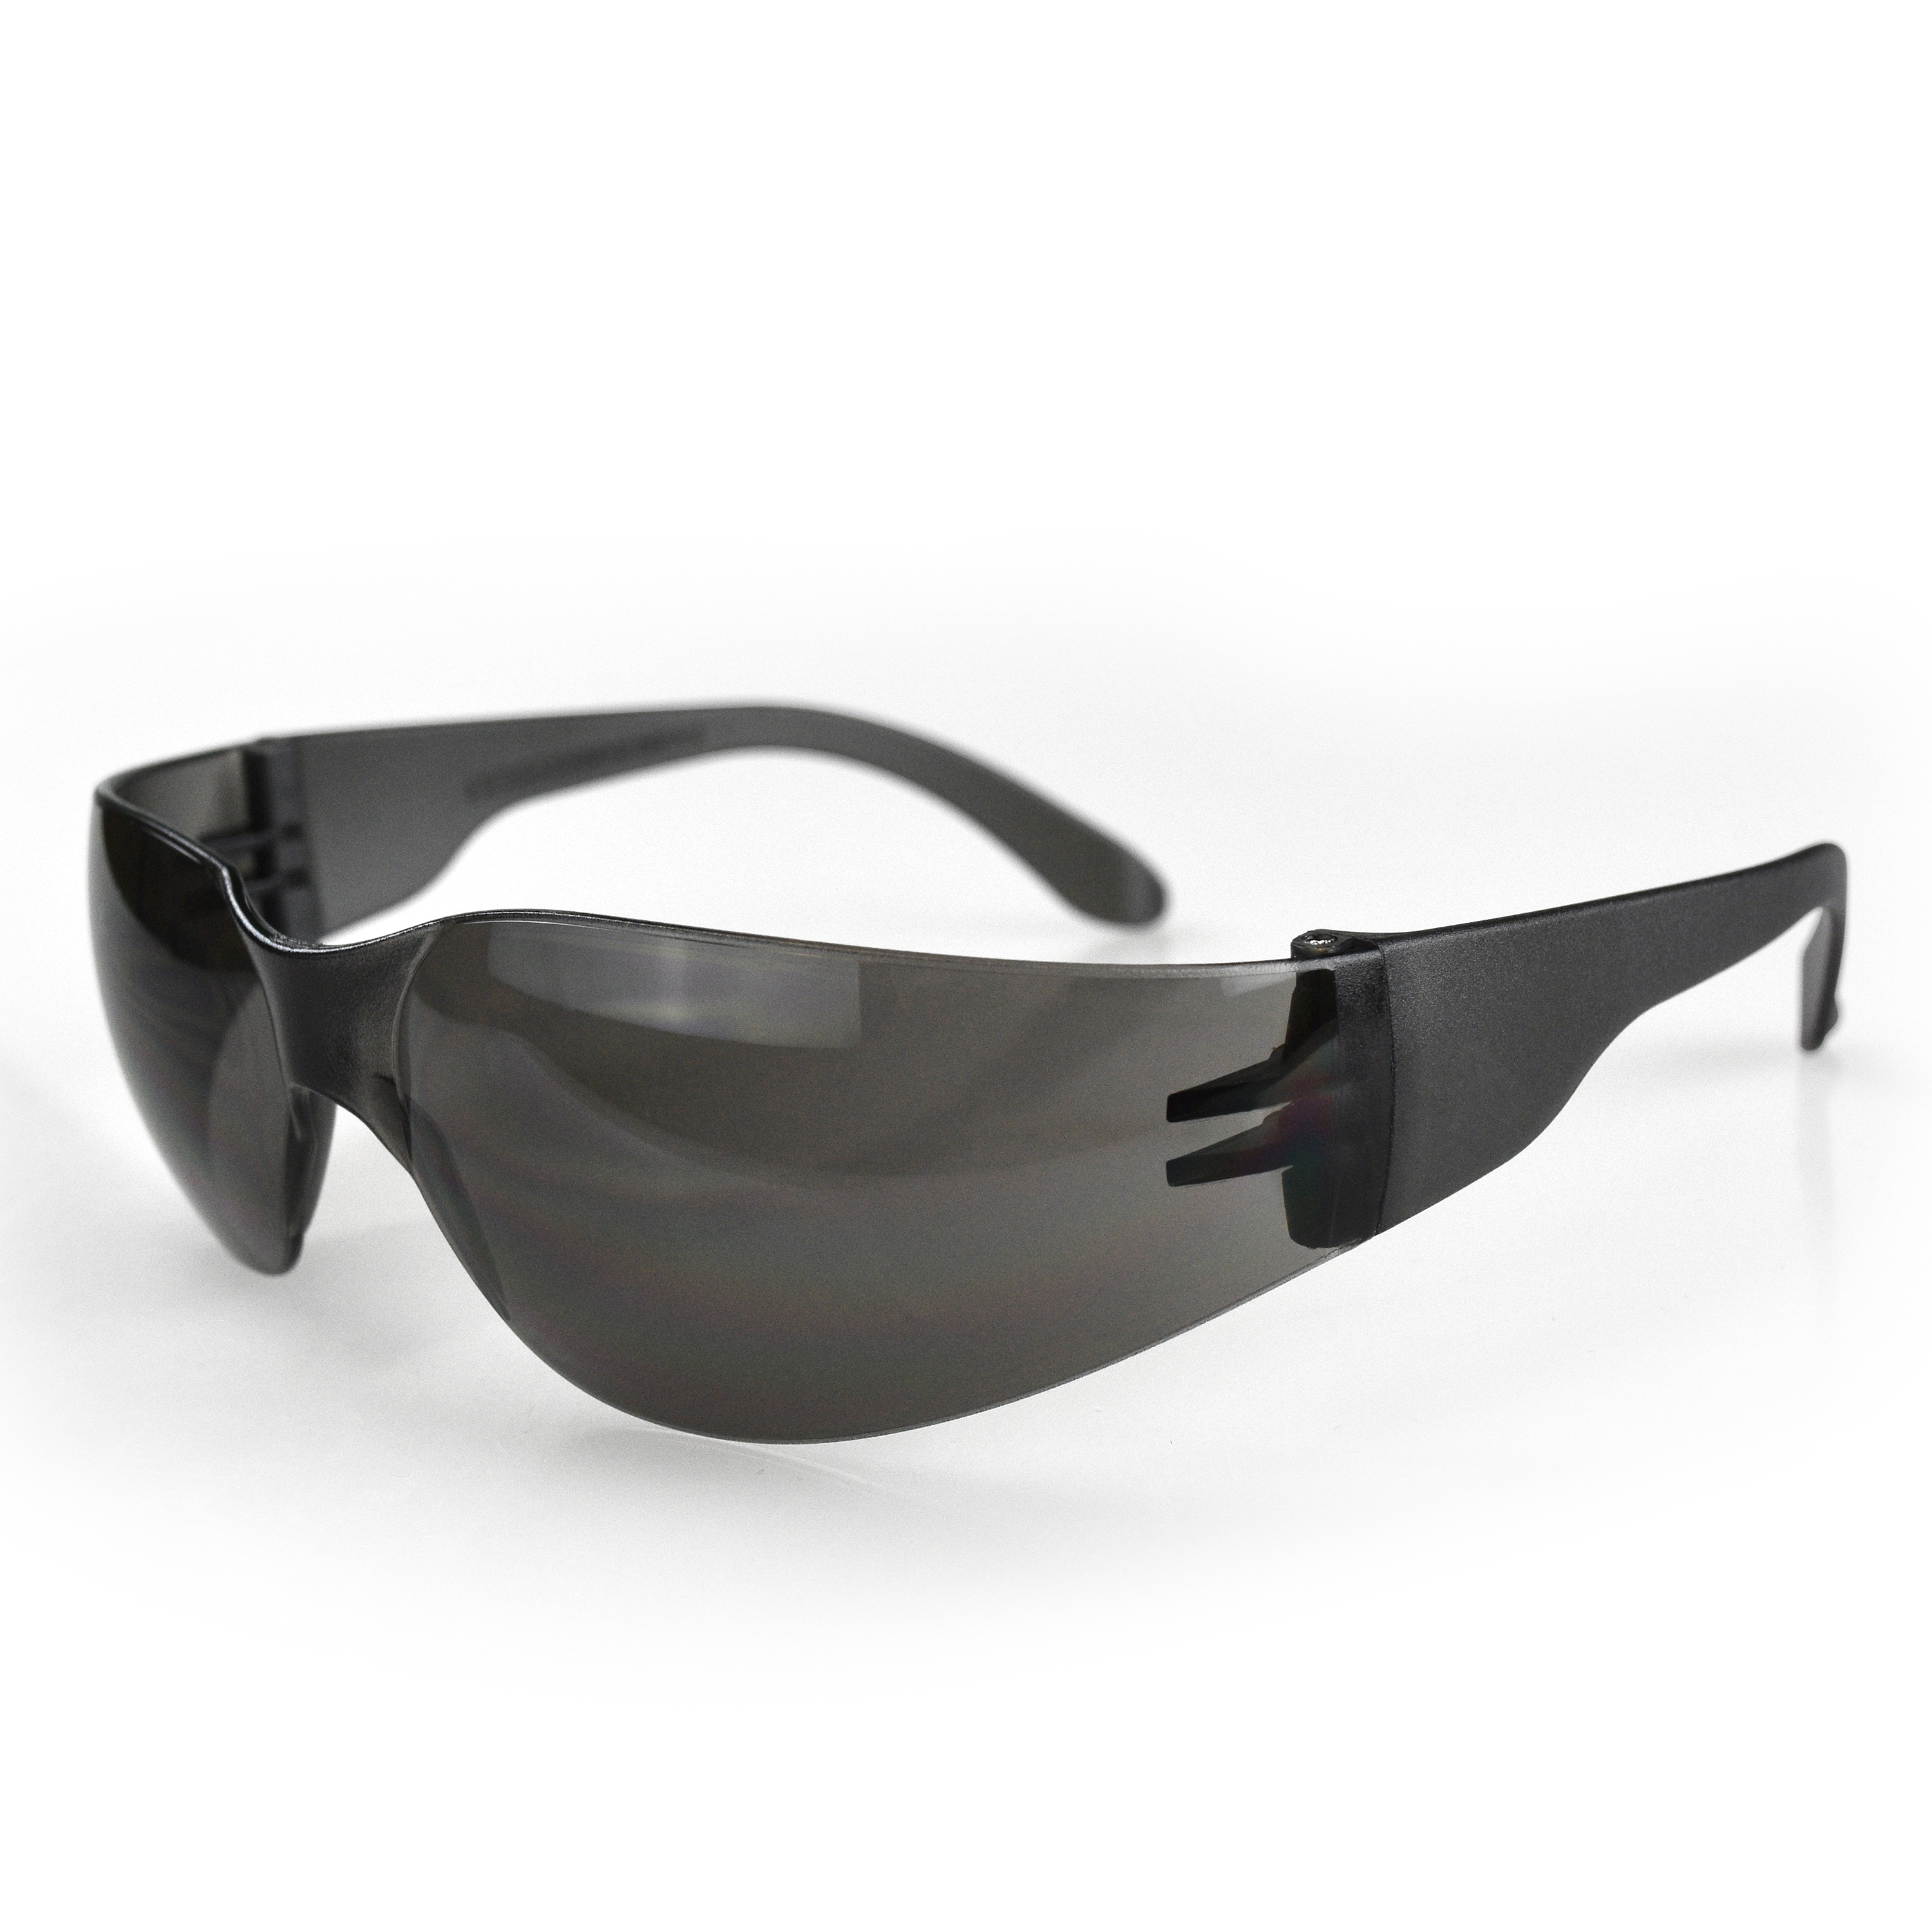 Mirage™ Safety Eyewear - Smoke Frame - Smoke Anti-Fog Lens - Anti-Fog Lens